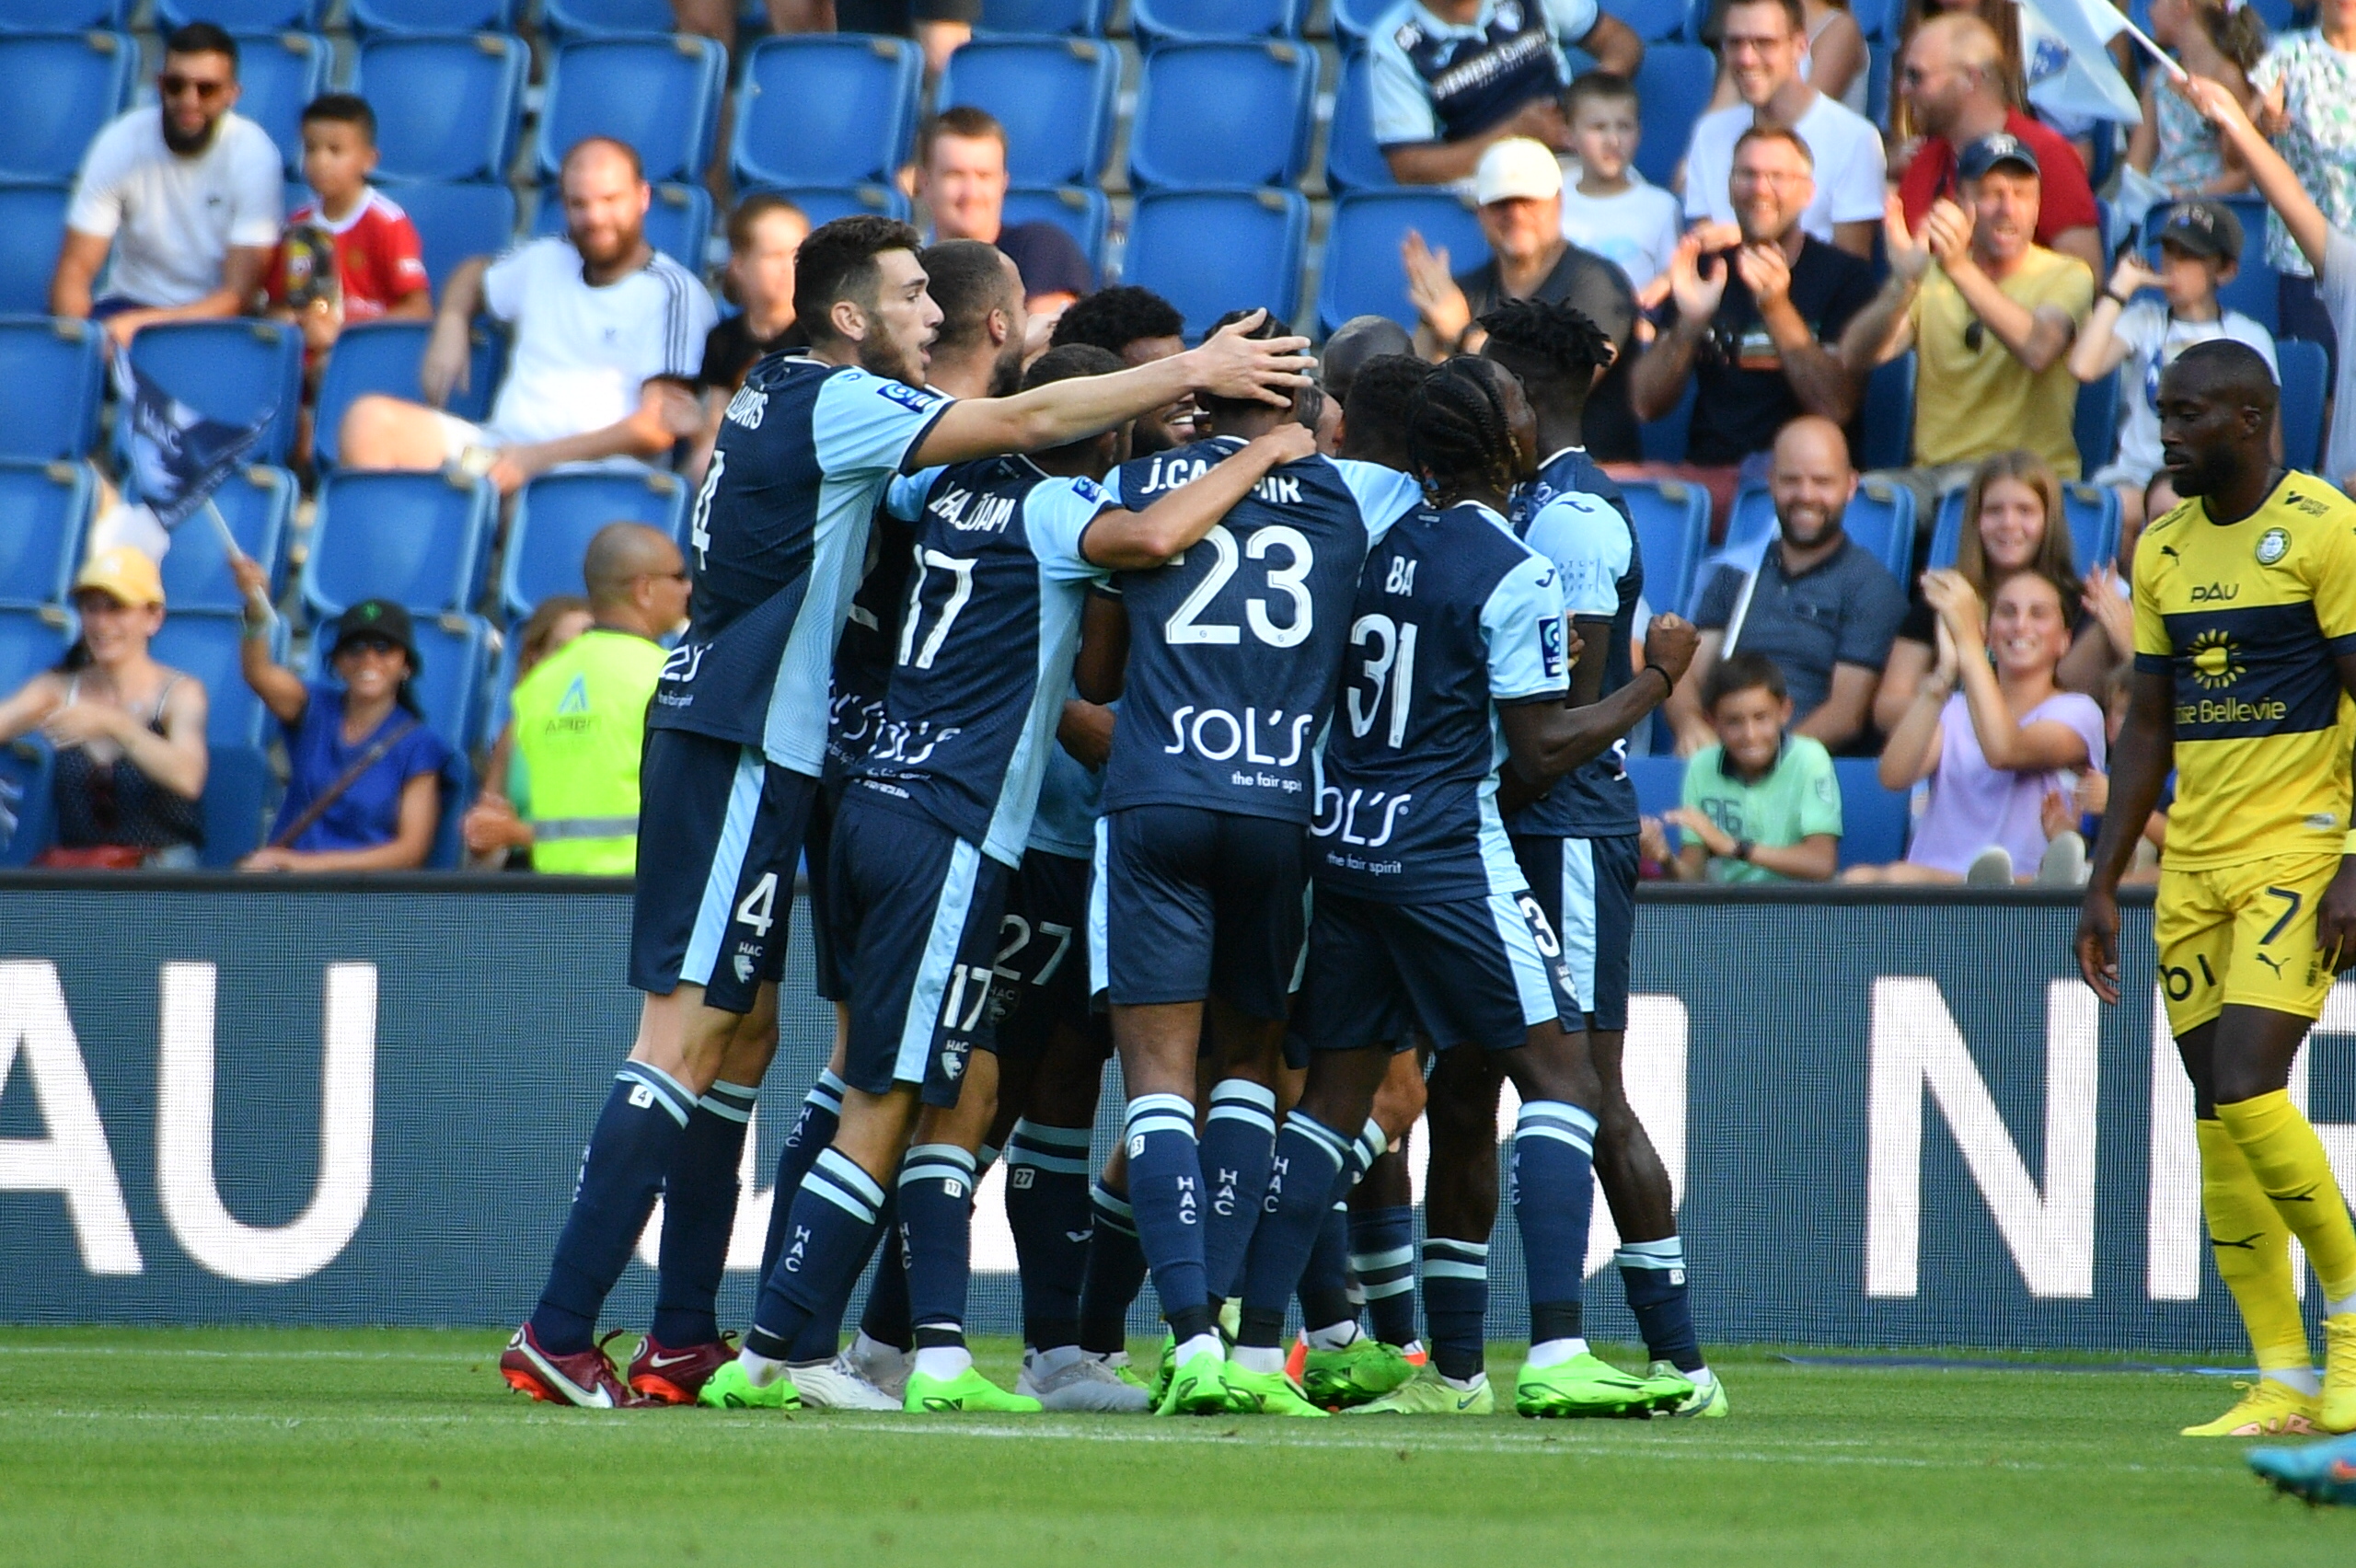 Trực tiếp bóng đá Le Havre - Pau FC: Cú lốp bóng táo bạo (Vòng 3 Ligue 2) (Hết giờ) - 14